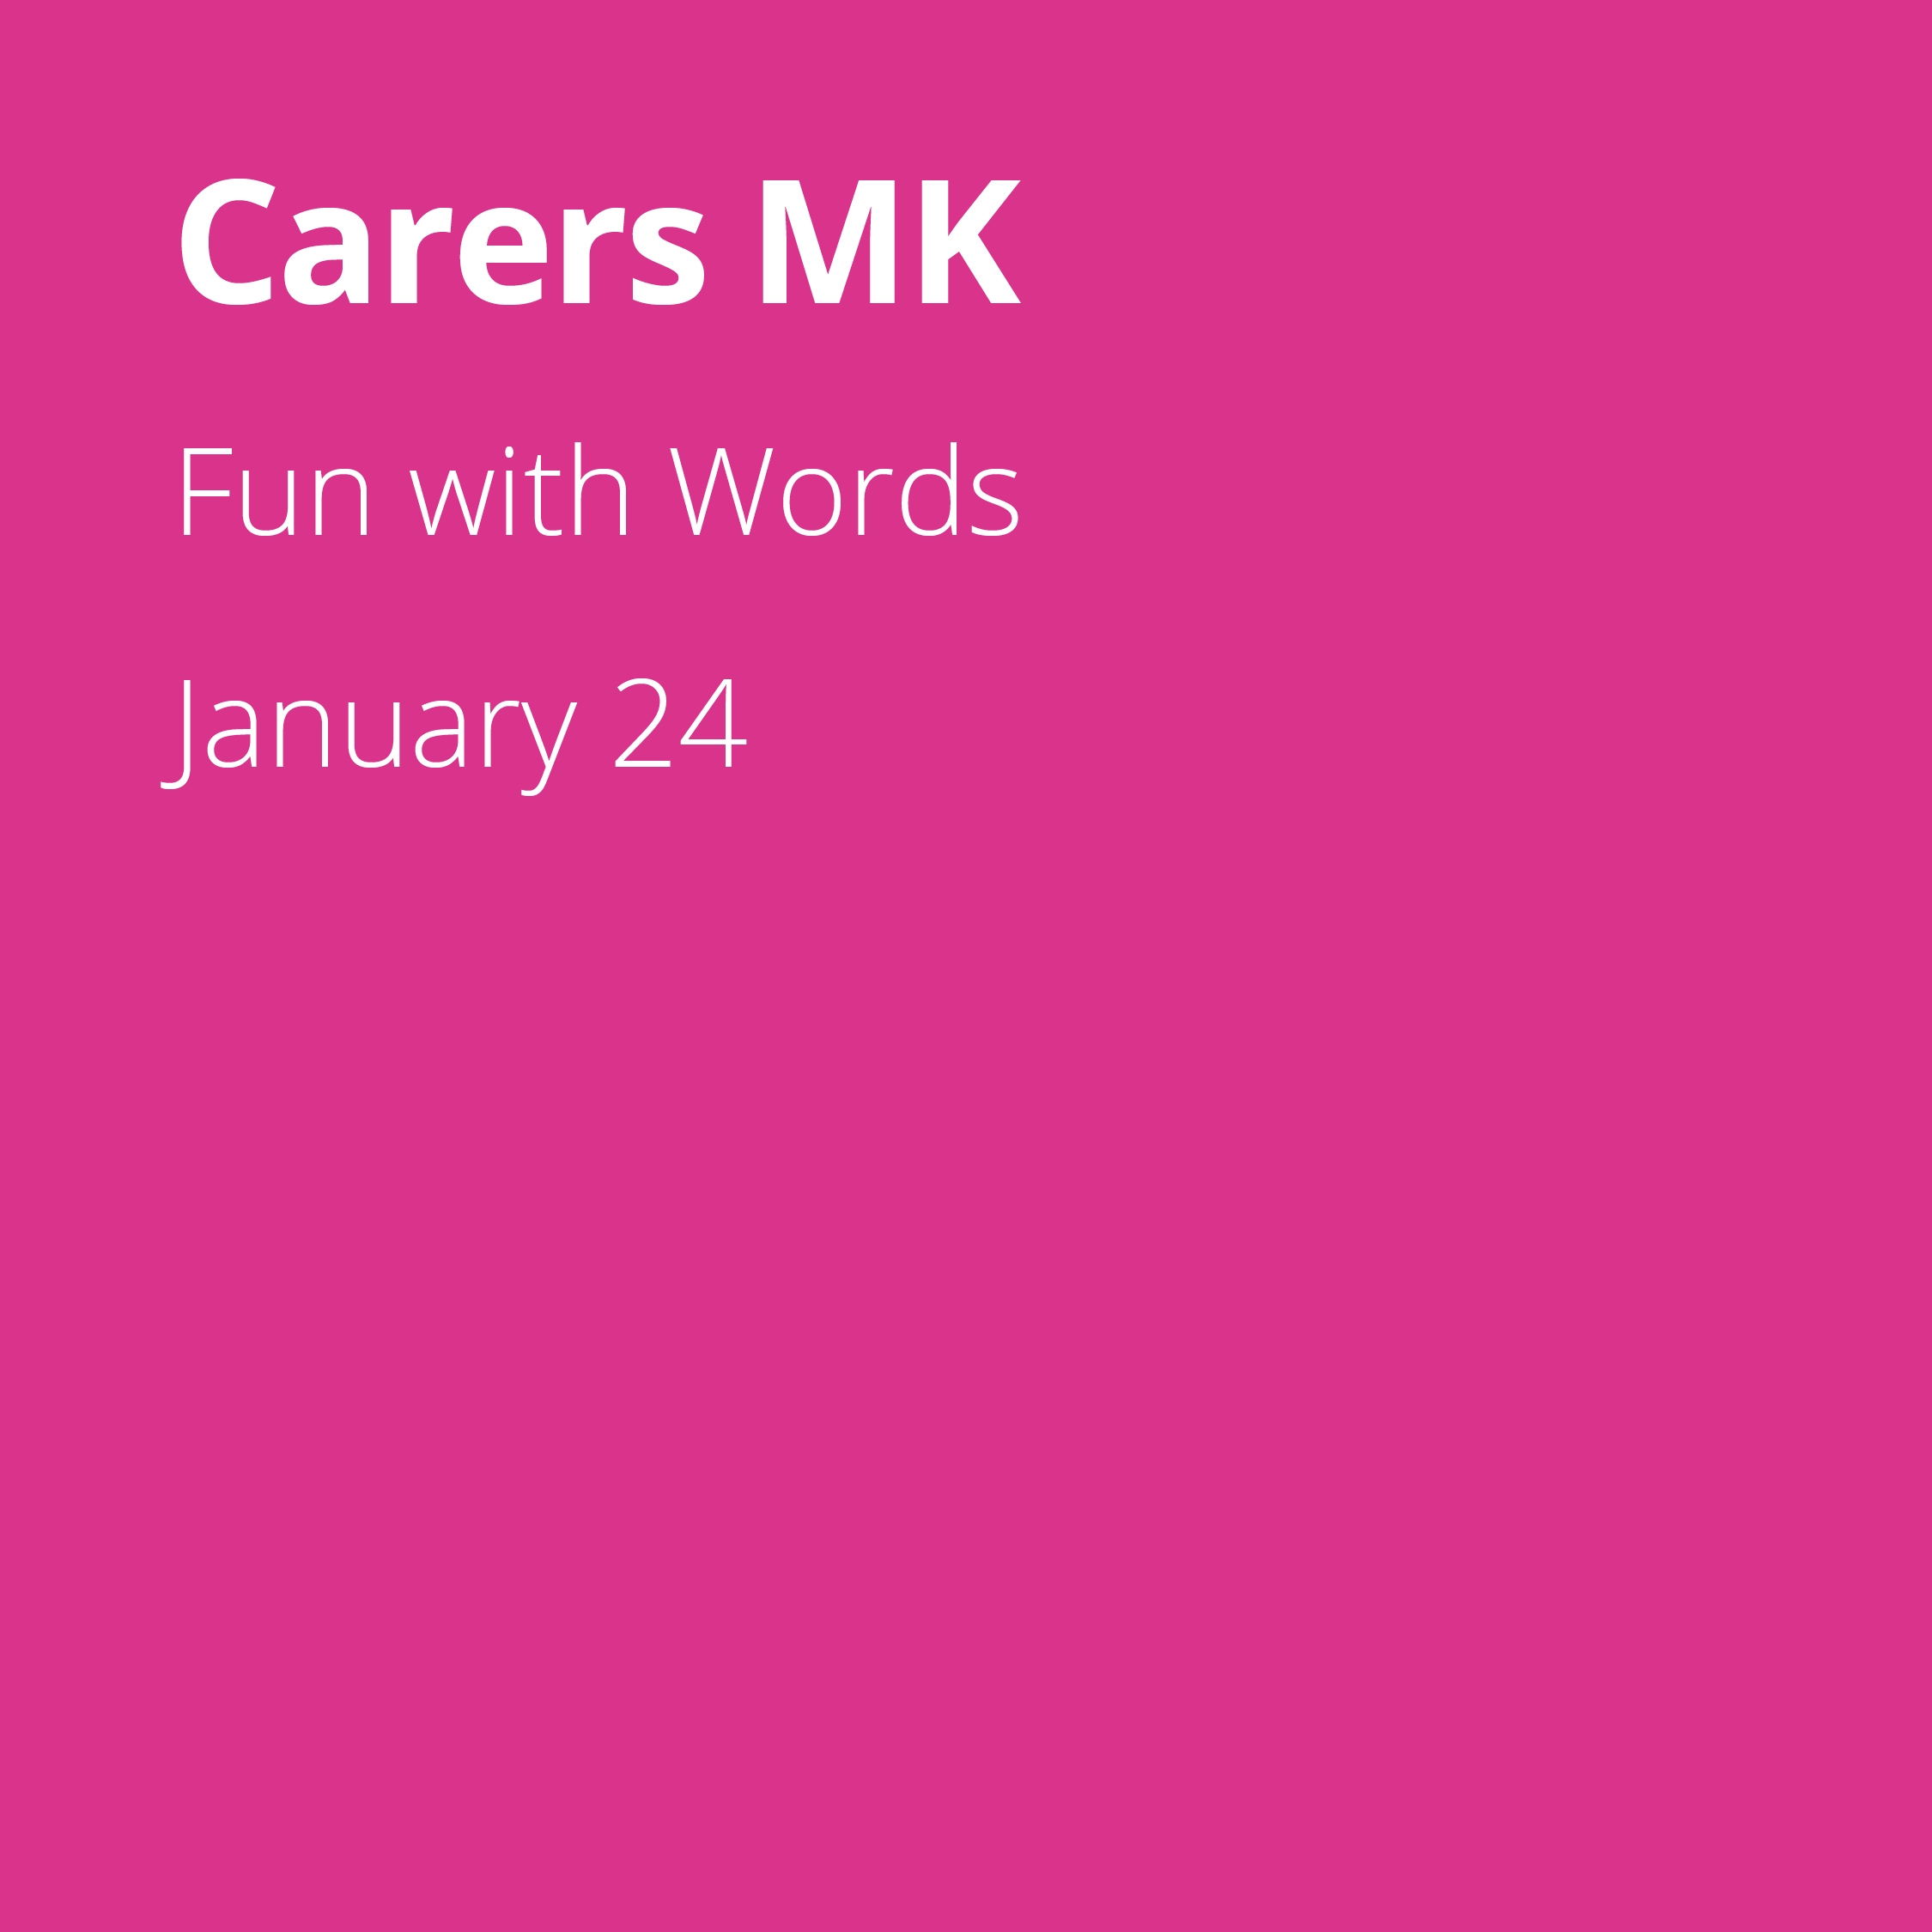 Carers MK